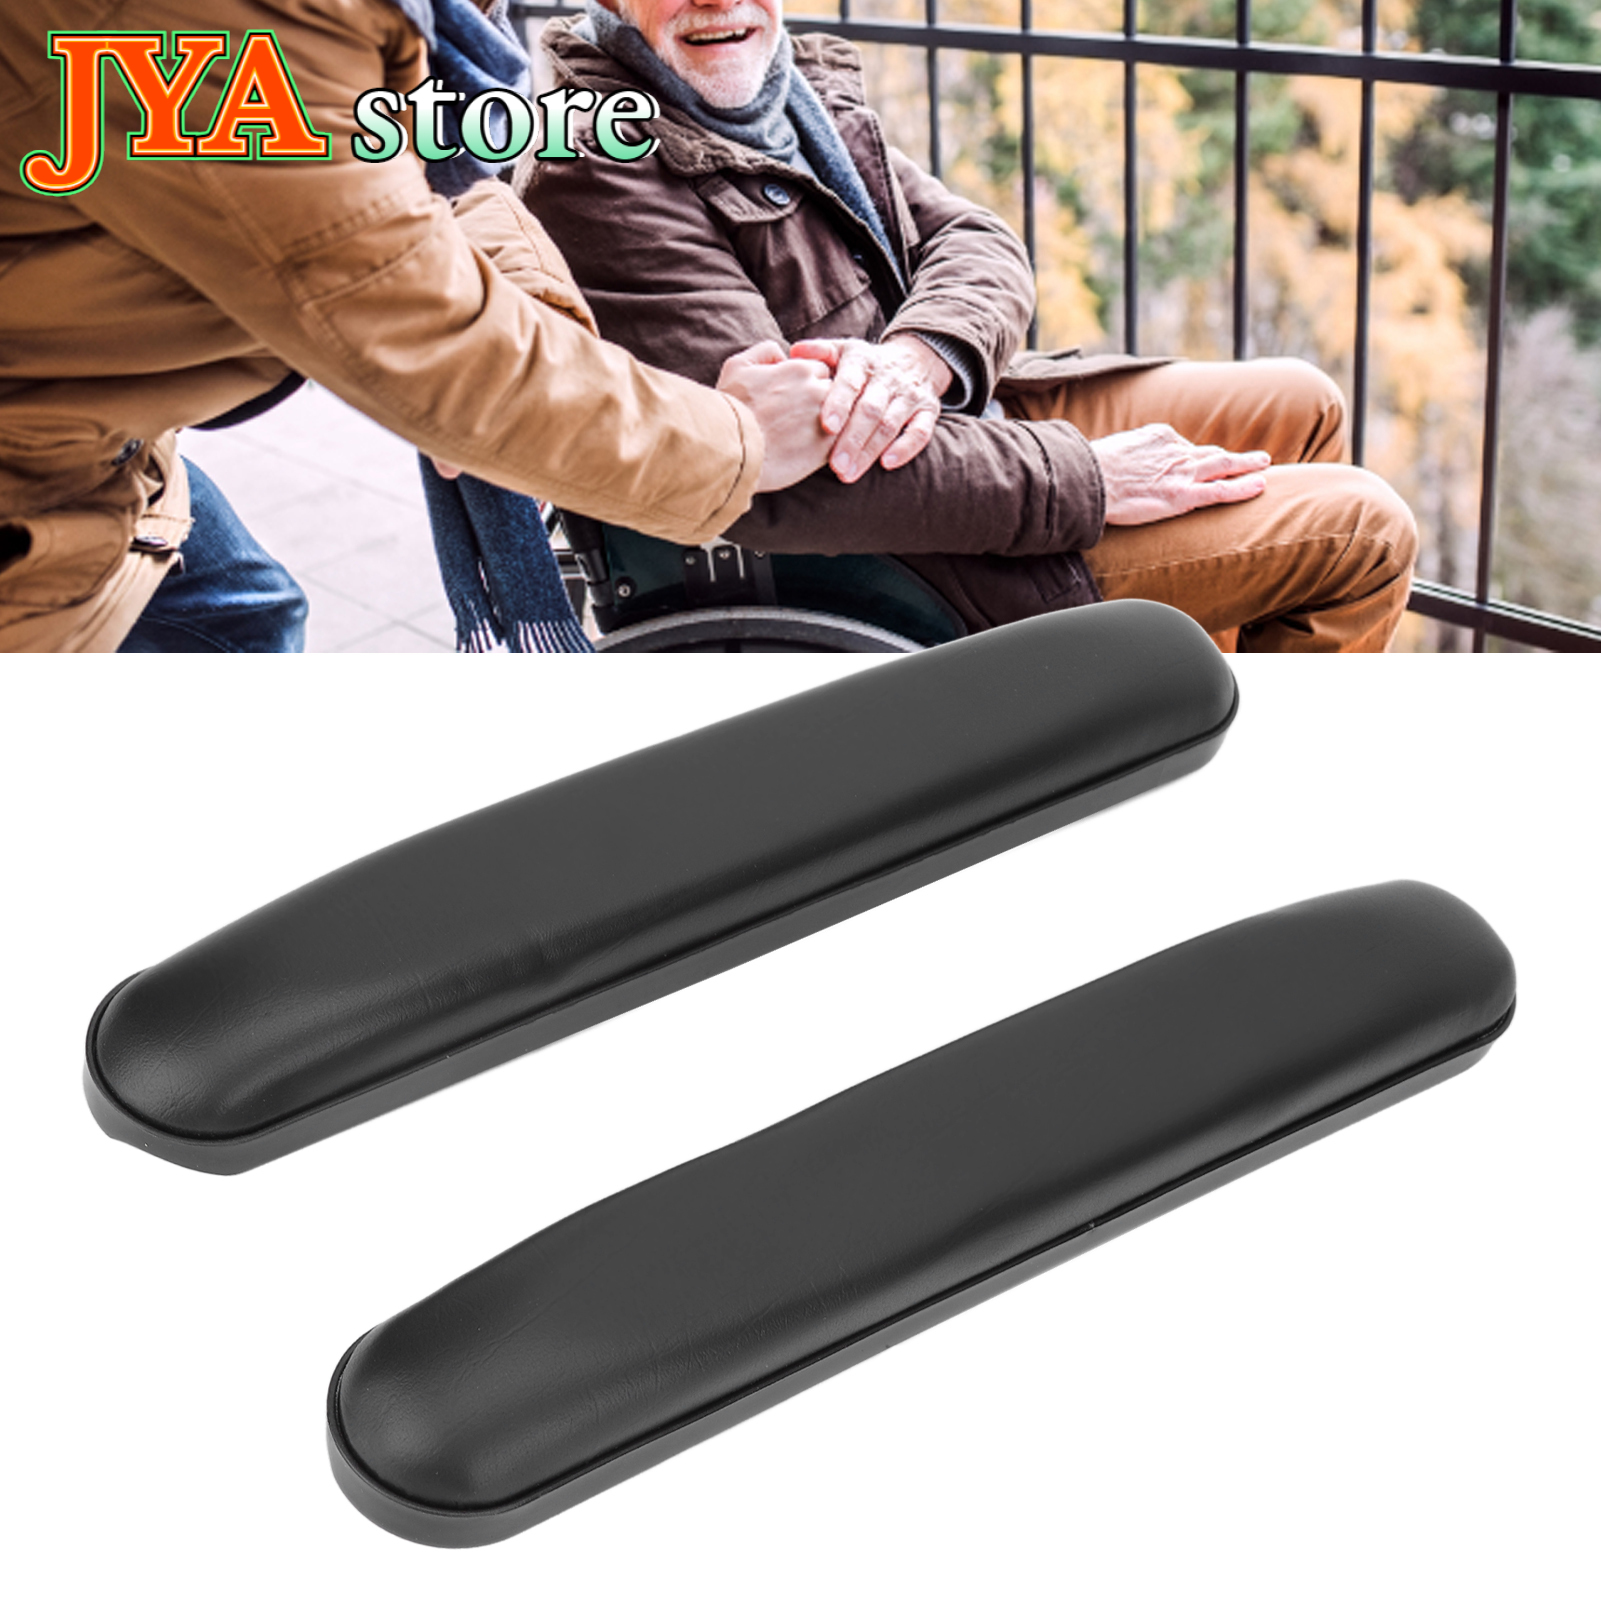 JYA store 1 Pair Wheelchair Armrest Wear Resistant Waterproof Arm Pads